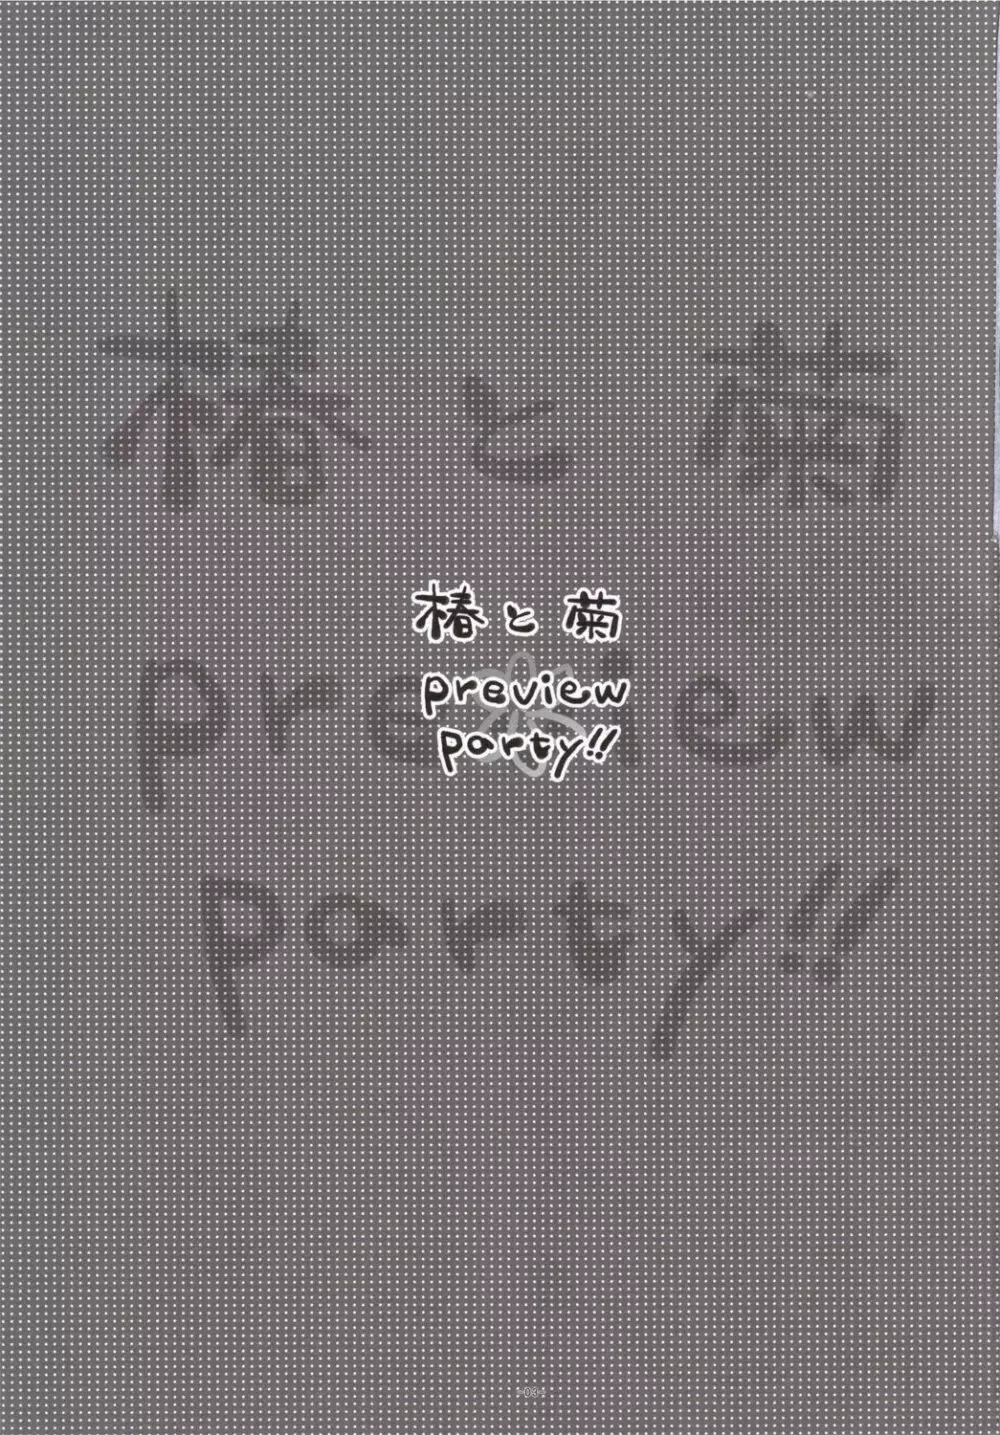 椿と菊 1.5 Preview Party!! 2ページ